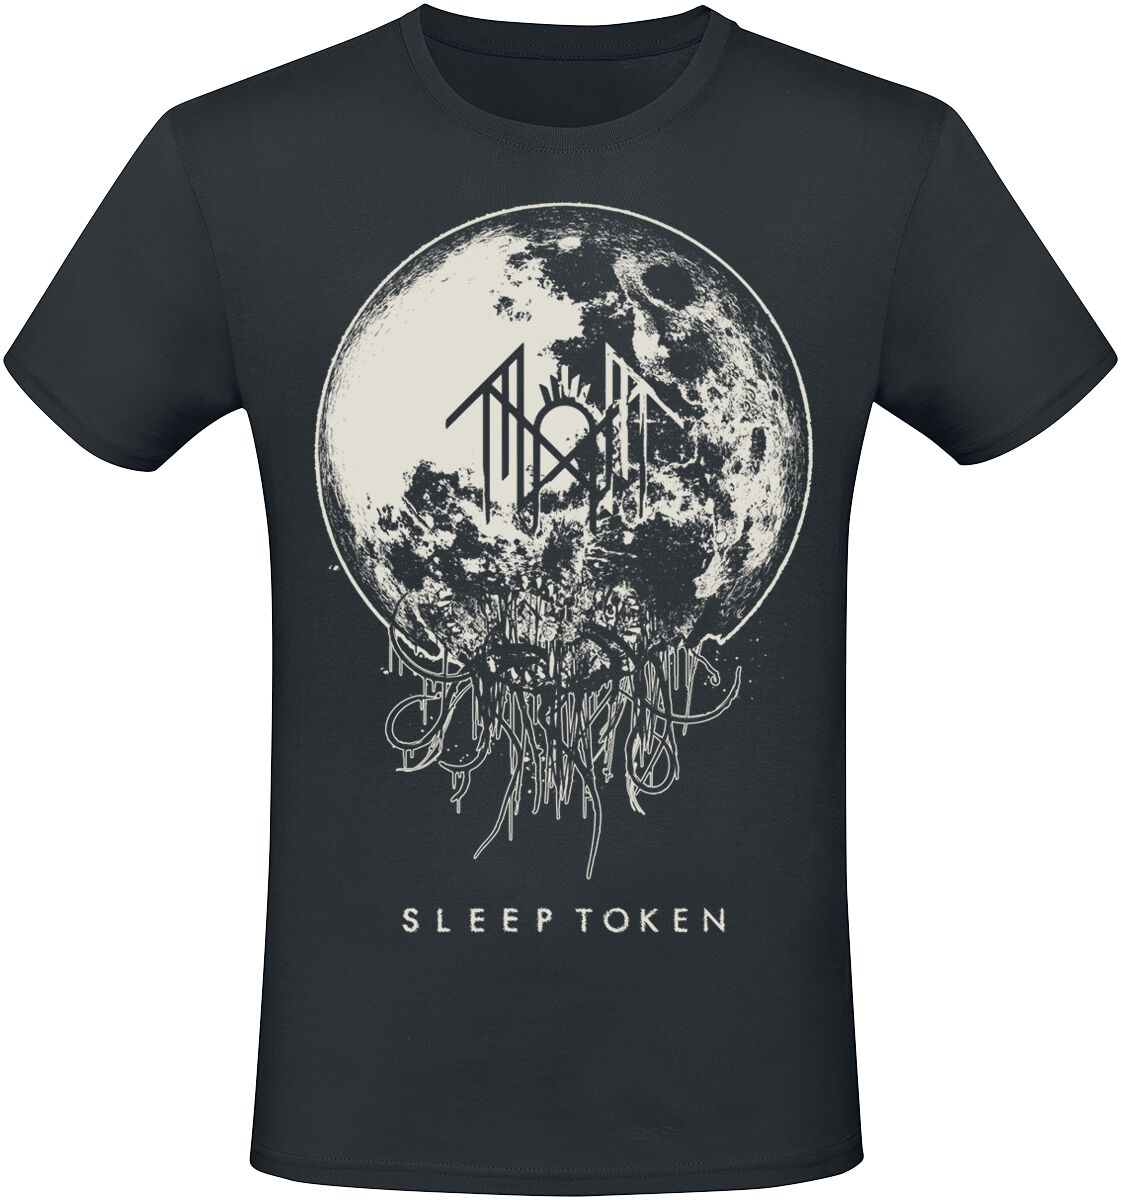 Sleep Token T-Shirt - Take Me Back To Eden - S bis 4XL - für Männer - Größe S - schwarz  - EMP exklusives Merchandise!